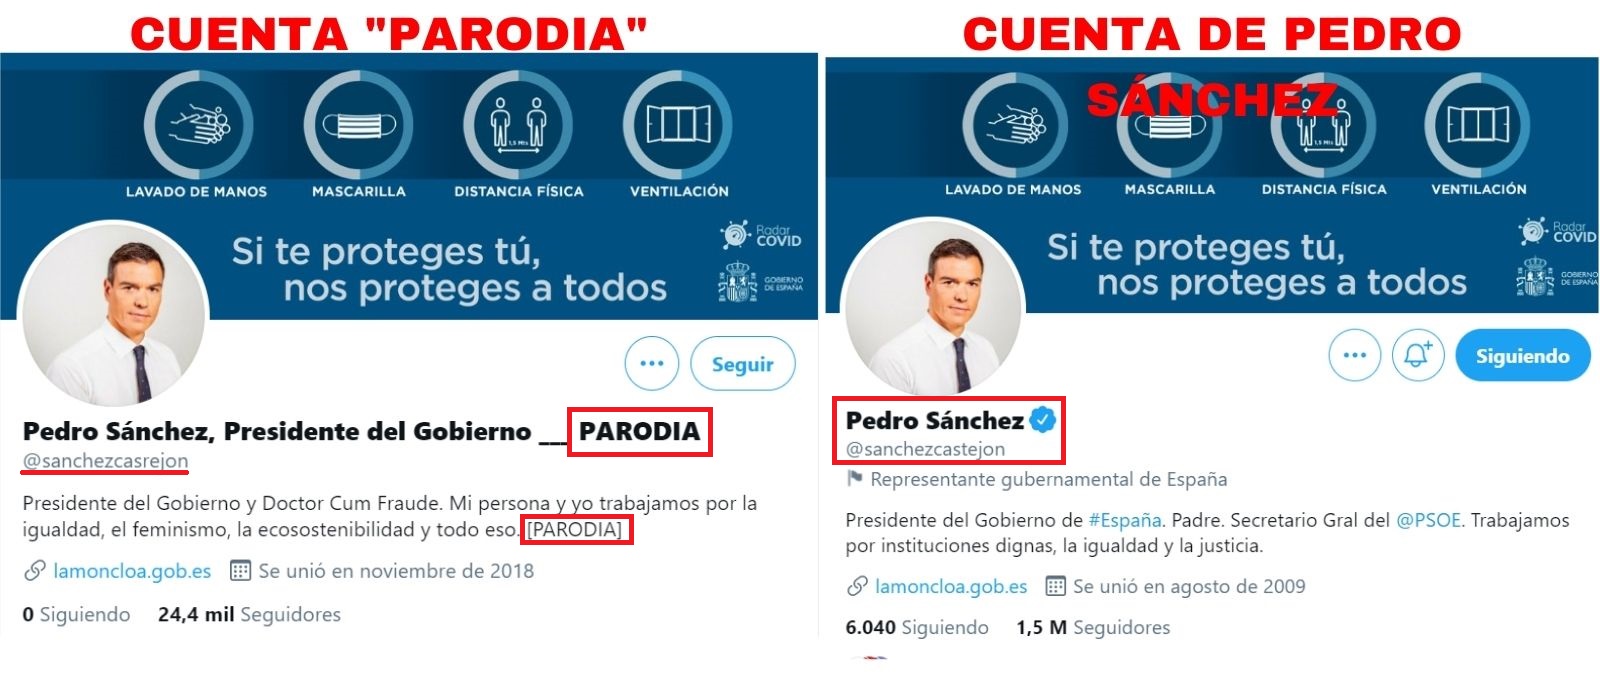 Comparación entre la cuenta "parodia" y la cuenta de Pedro Sánchez.